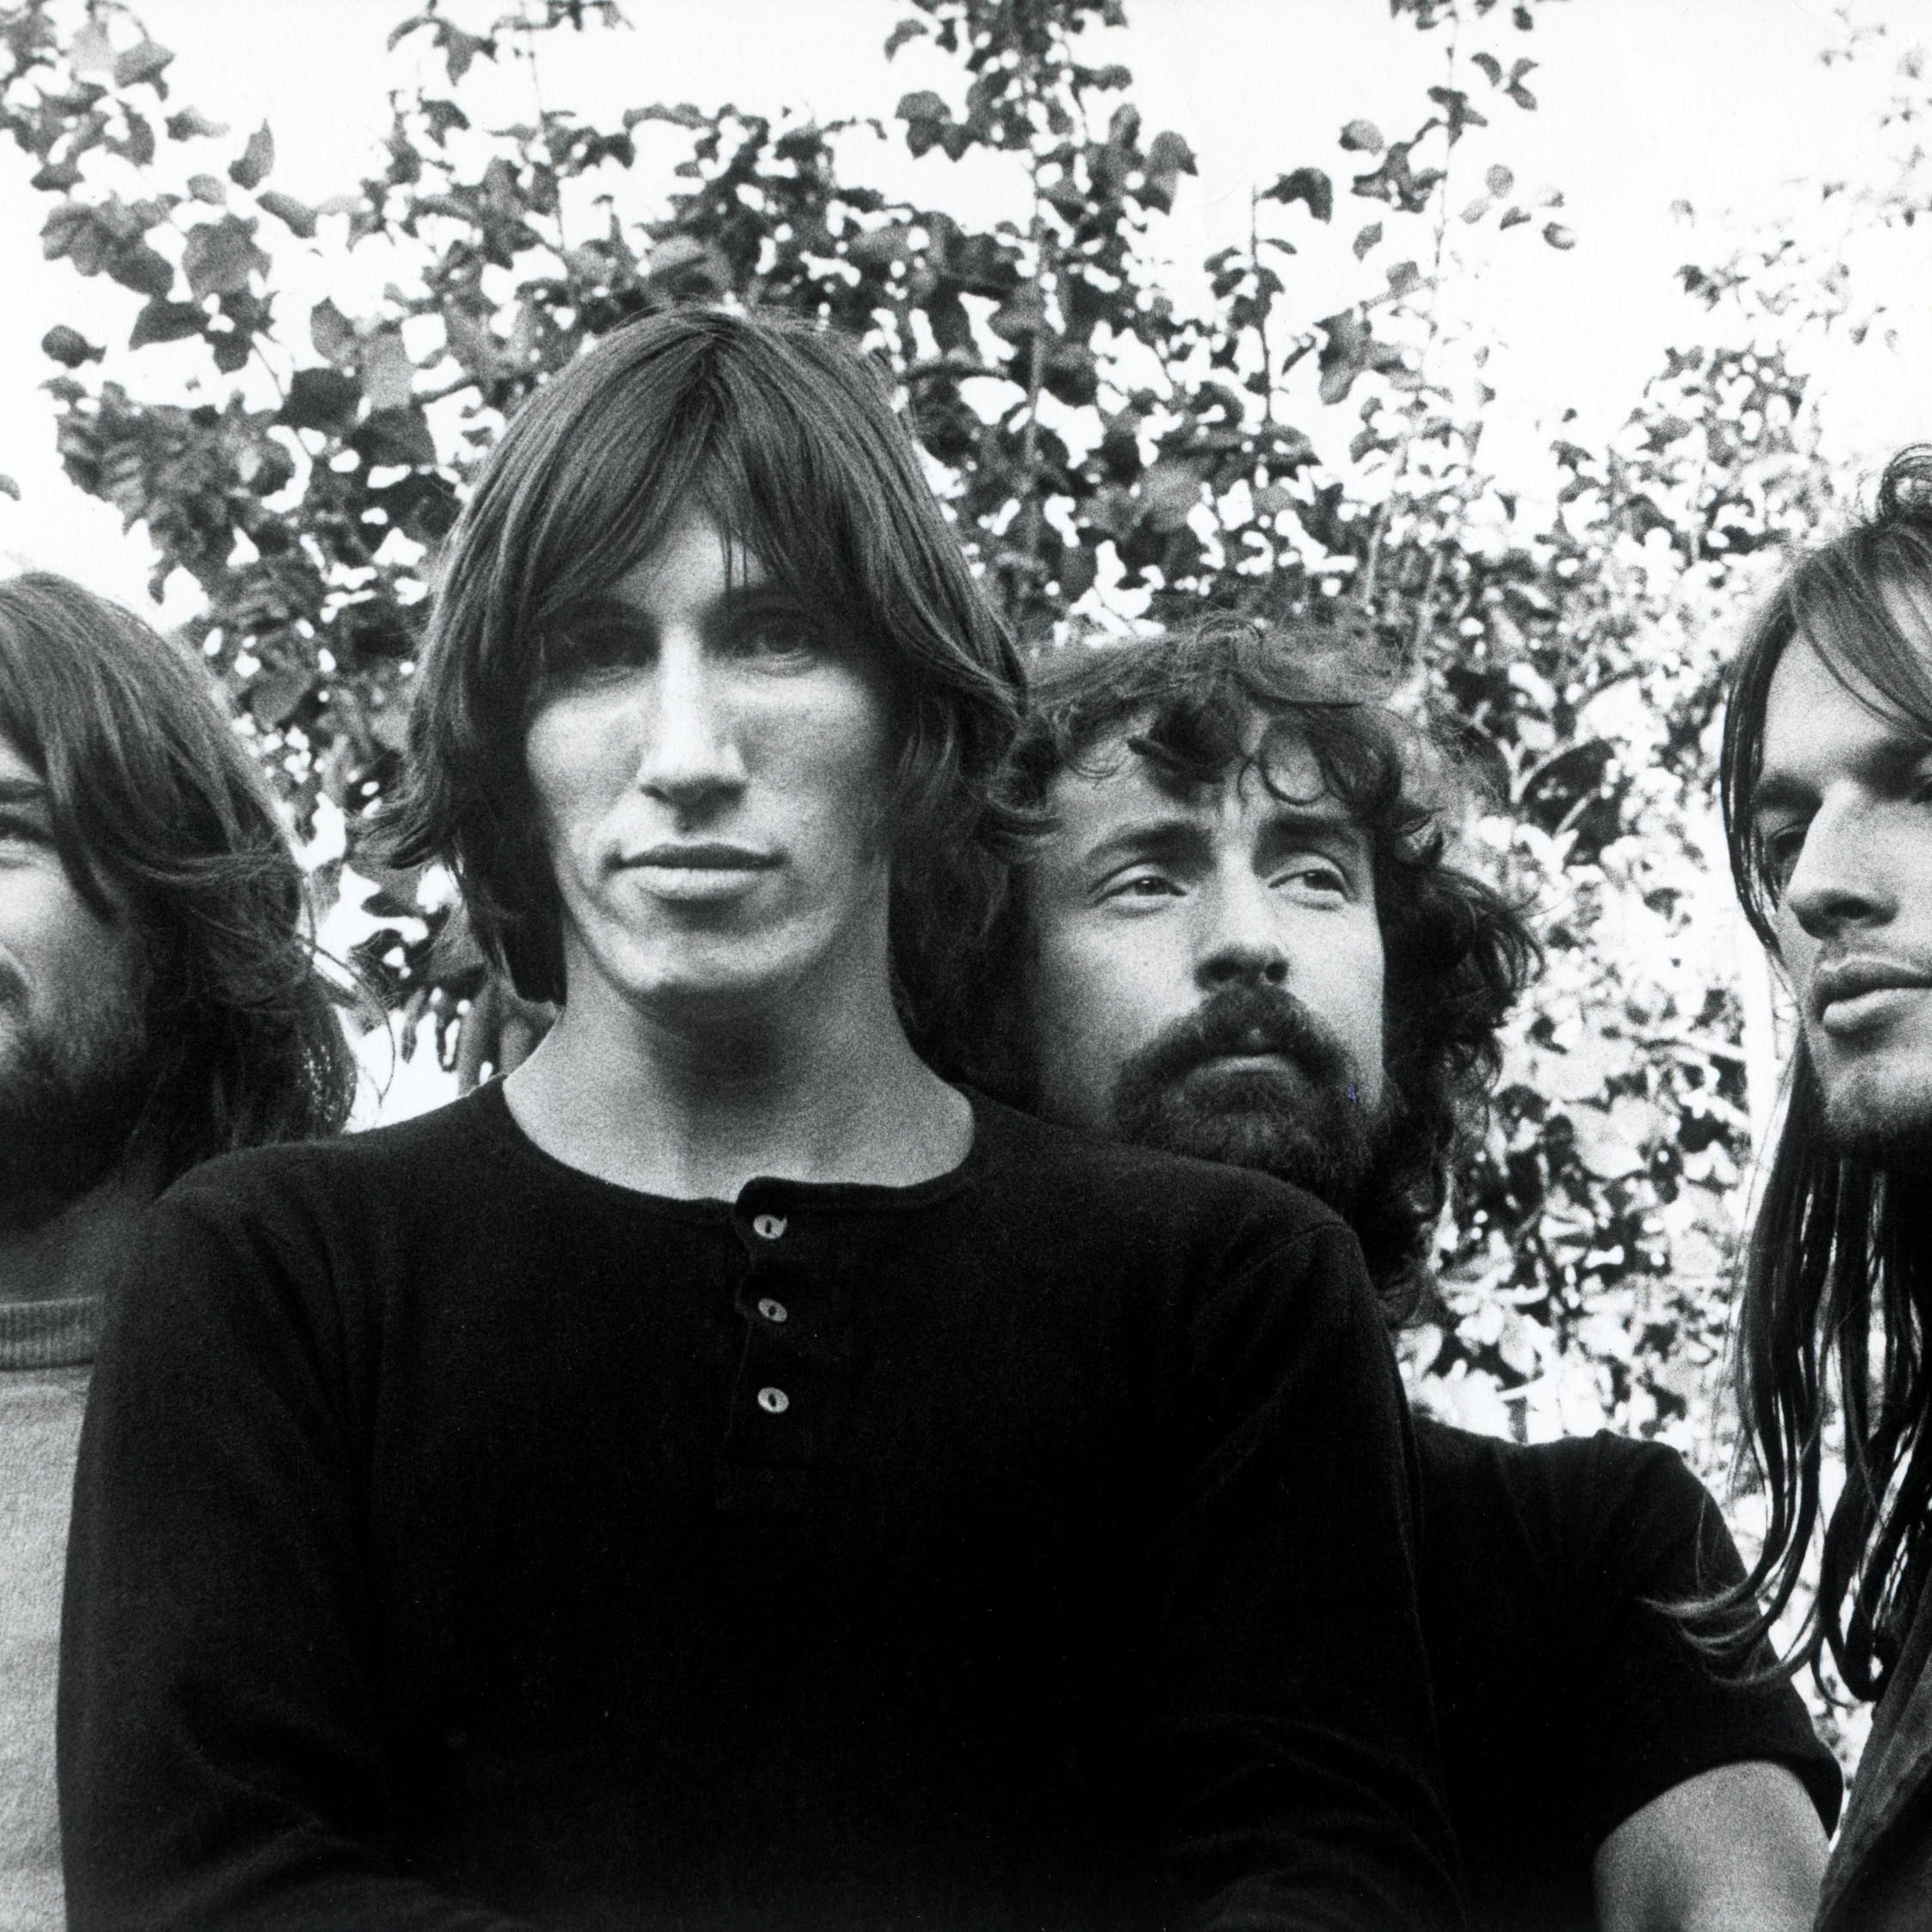 2248x2248 Pink Floyd Rock Band Syd Barrett 2248x2248 Resolution